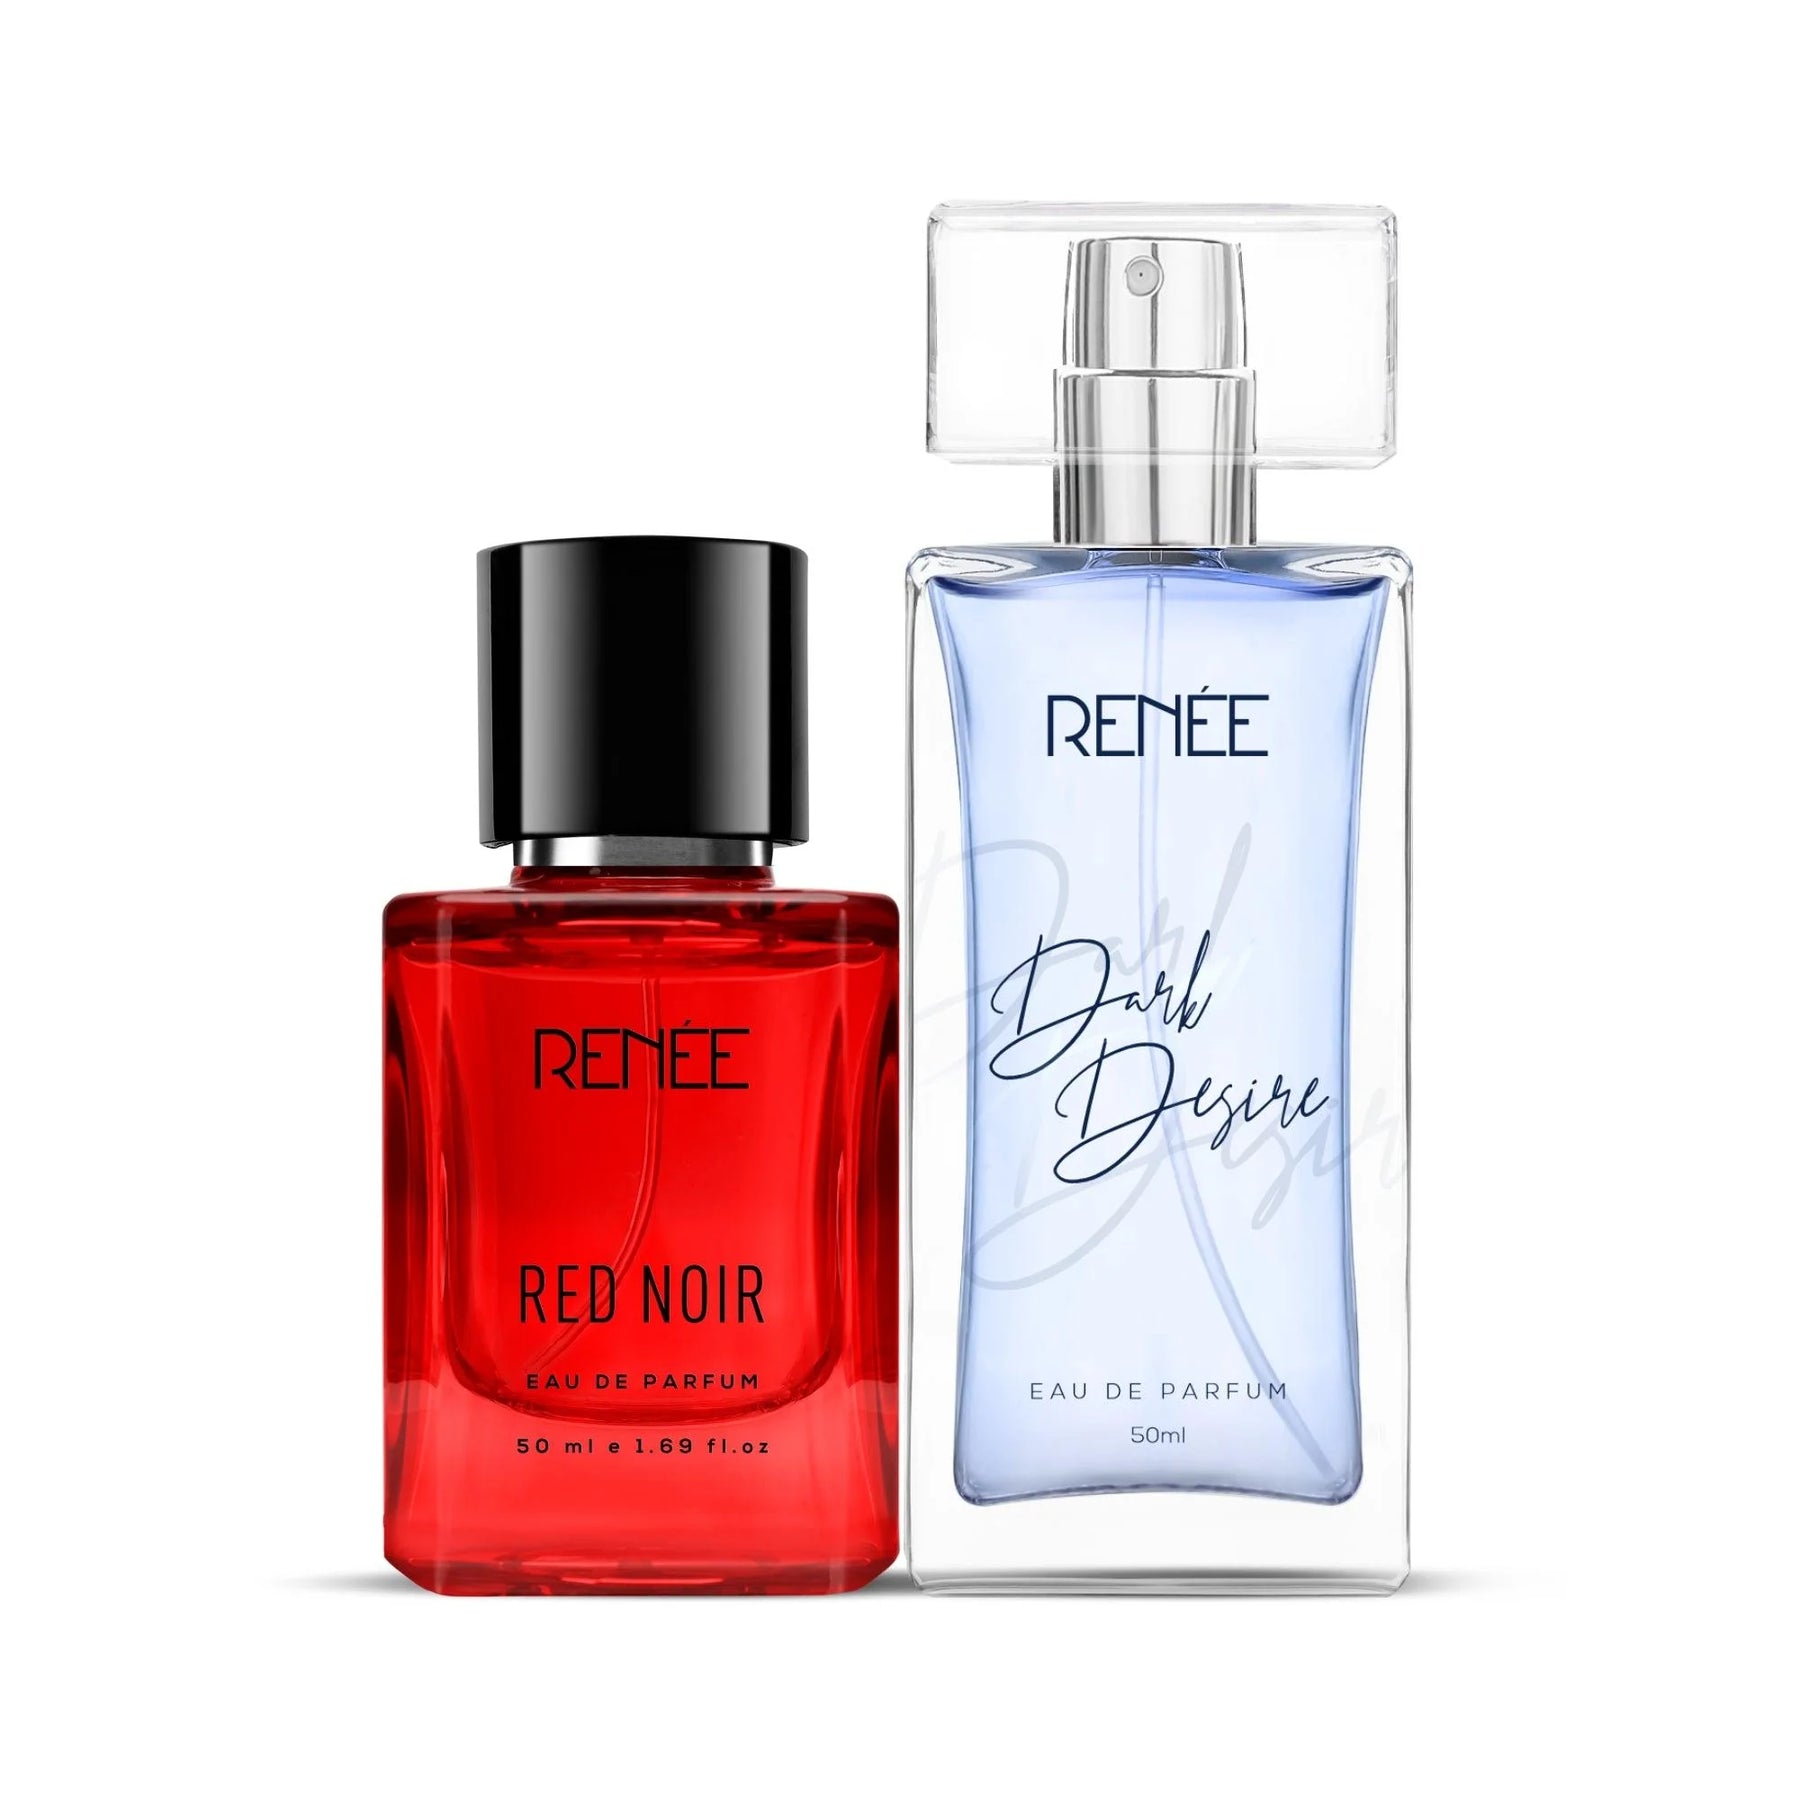 RENEE Eau De Parfum Red Noir & Dark Desire Combo 50ml Each